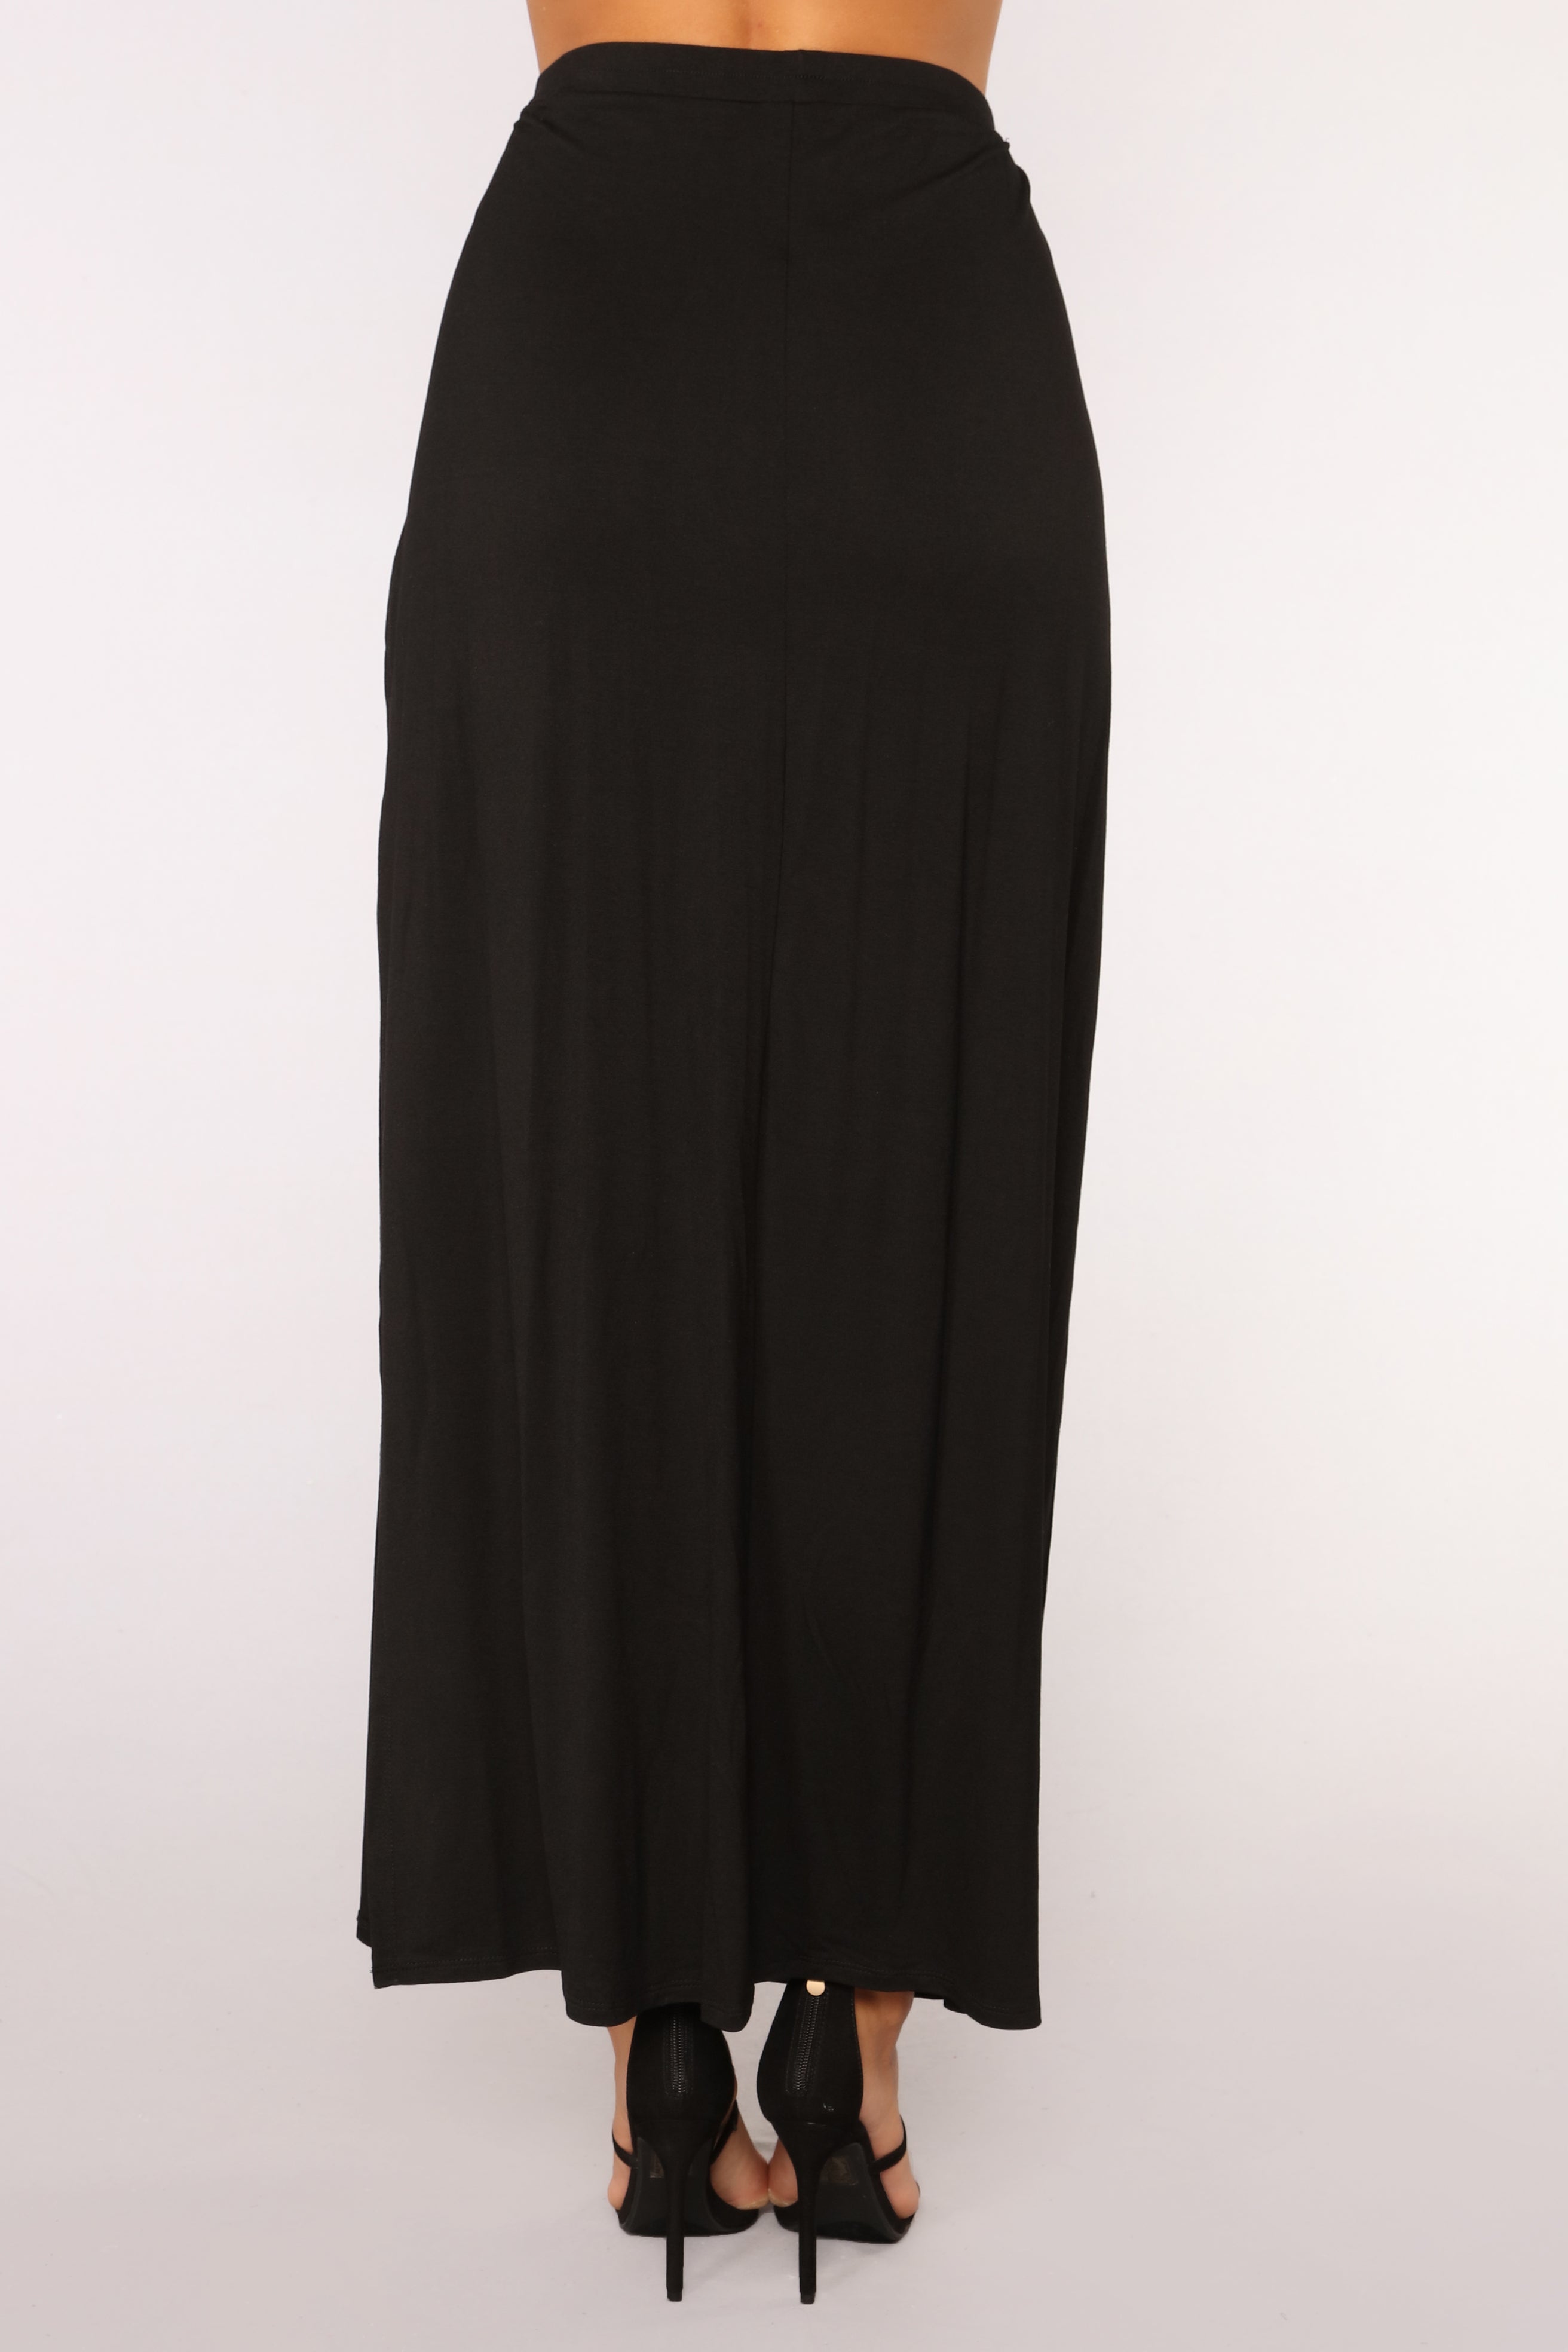 Julissa Skirt Set - Black – Fashion Nova